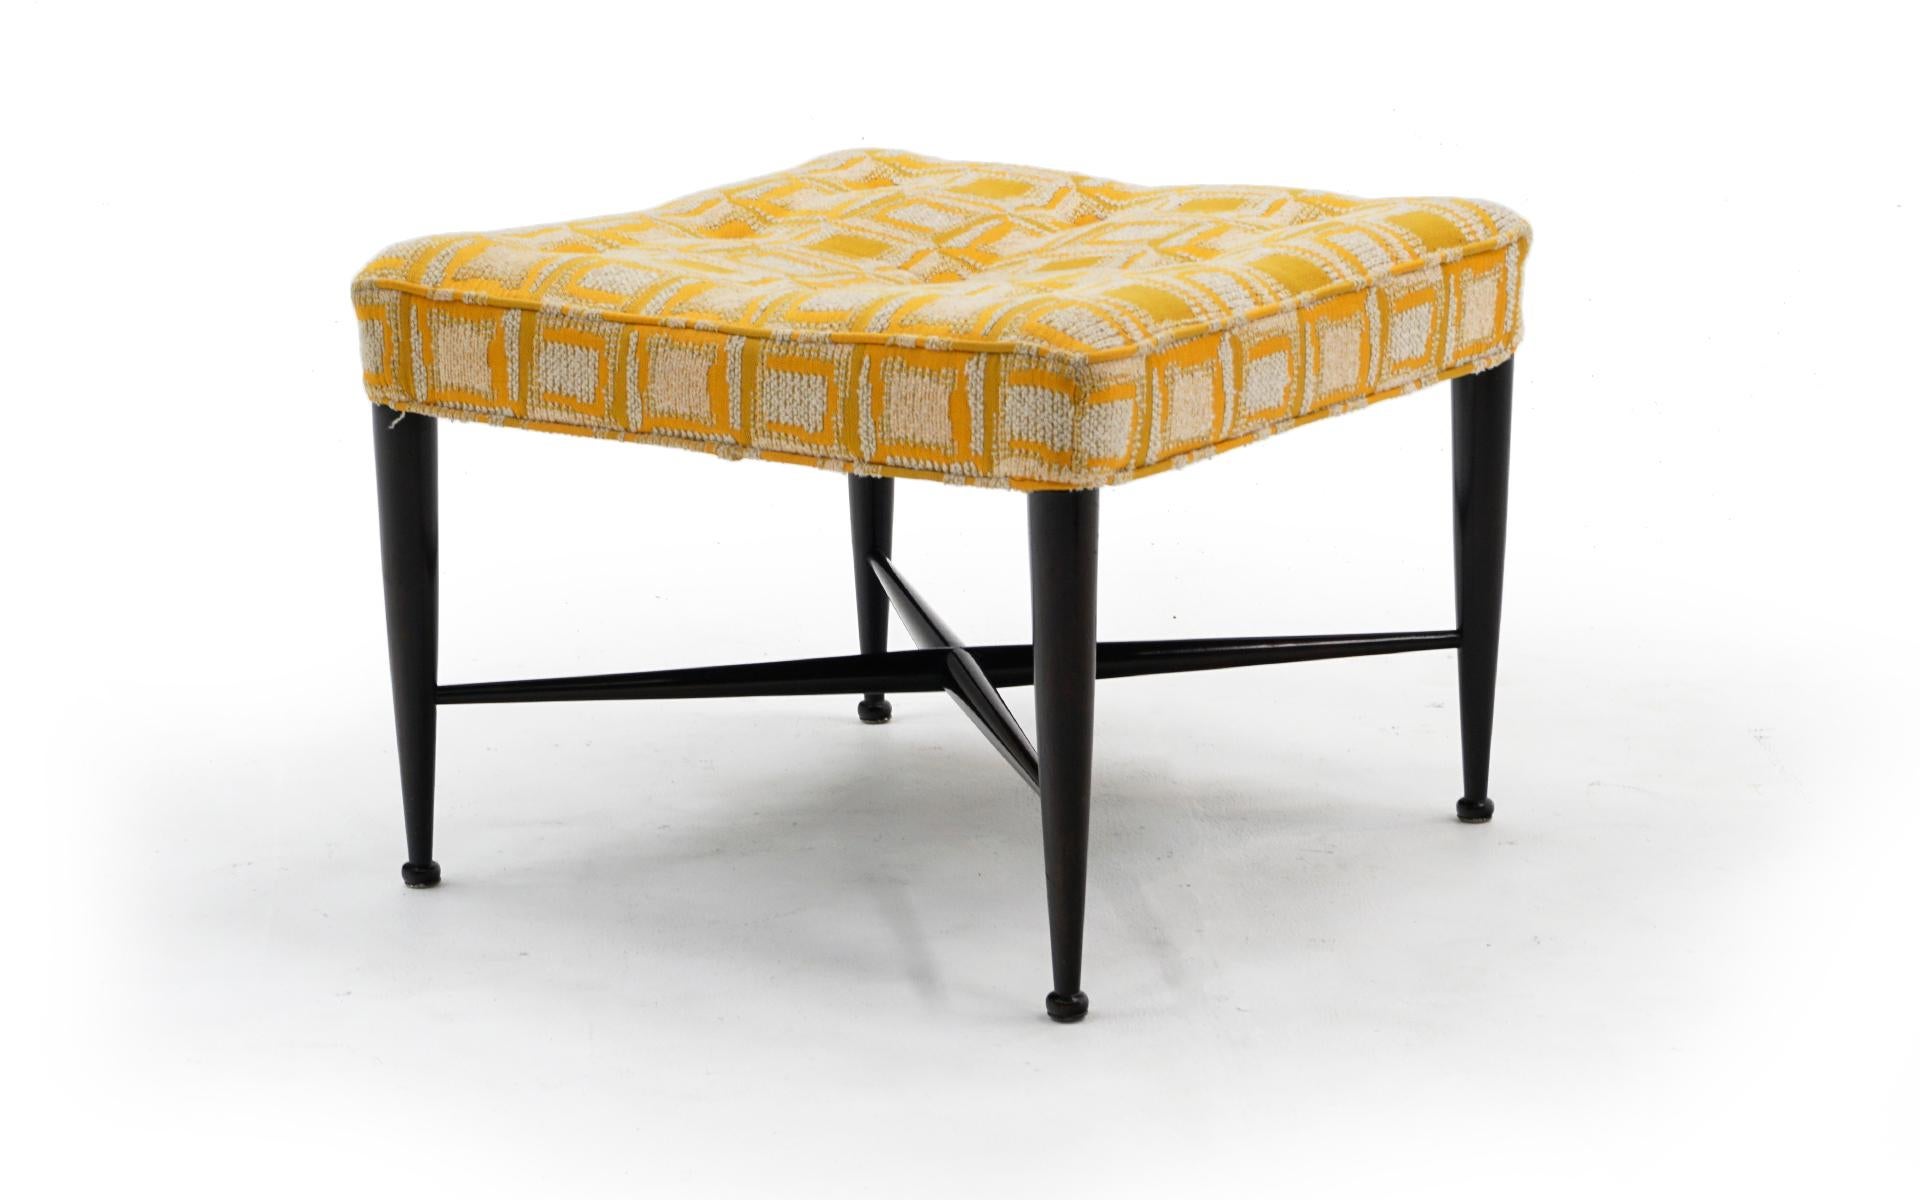 Tabouret / banc / repose-pieds / pouf Thebes conçu par Edward Wormley pour Dunbar, années 1950. Cet exemple conserve le tissu original à motifs géométriques jaune et orange. La finition du cadre en acajou est également d'origine. Pas de taches, de